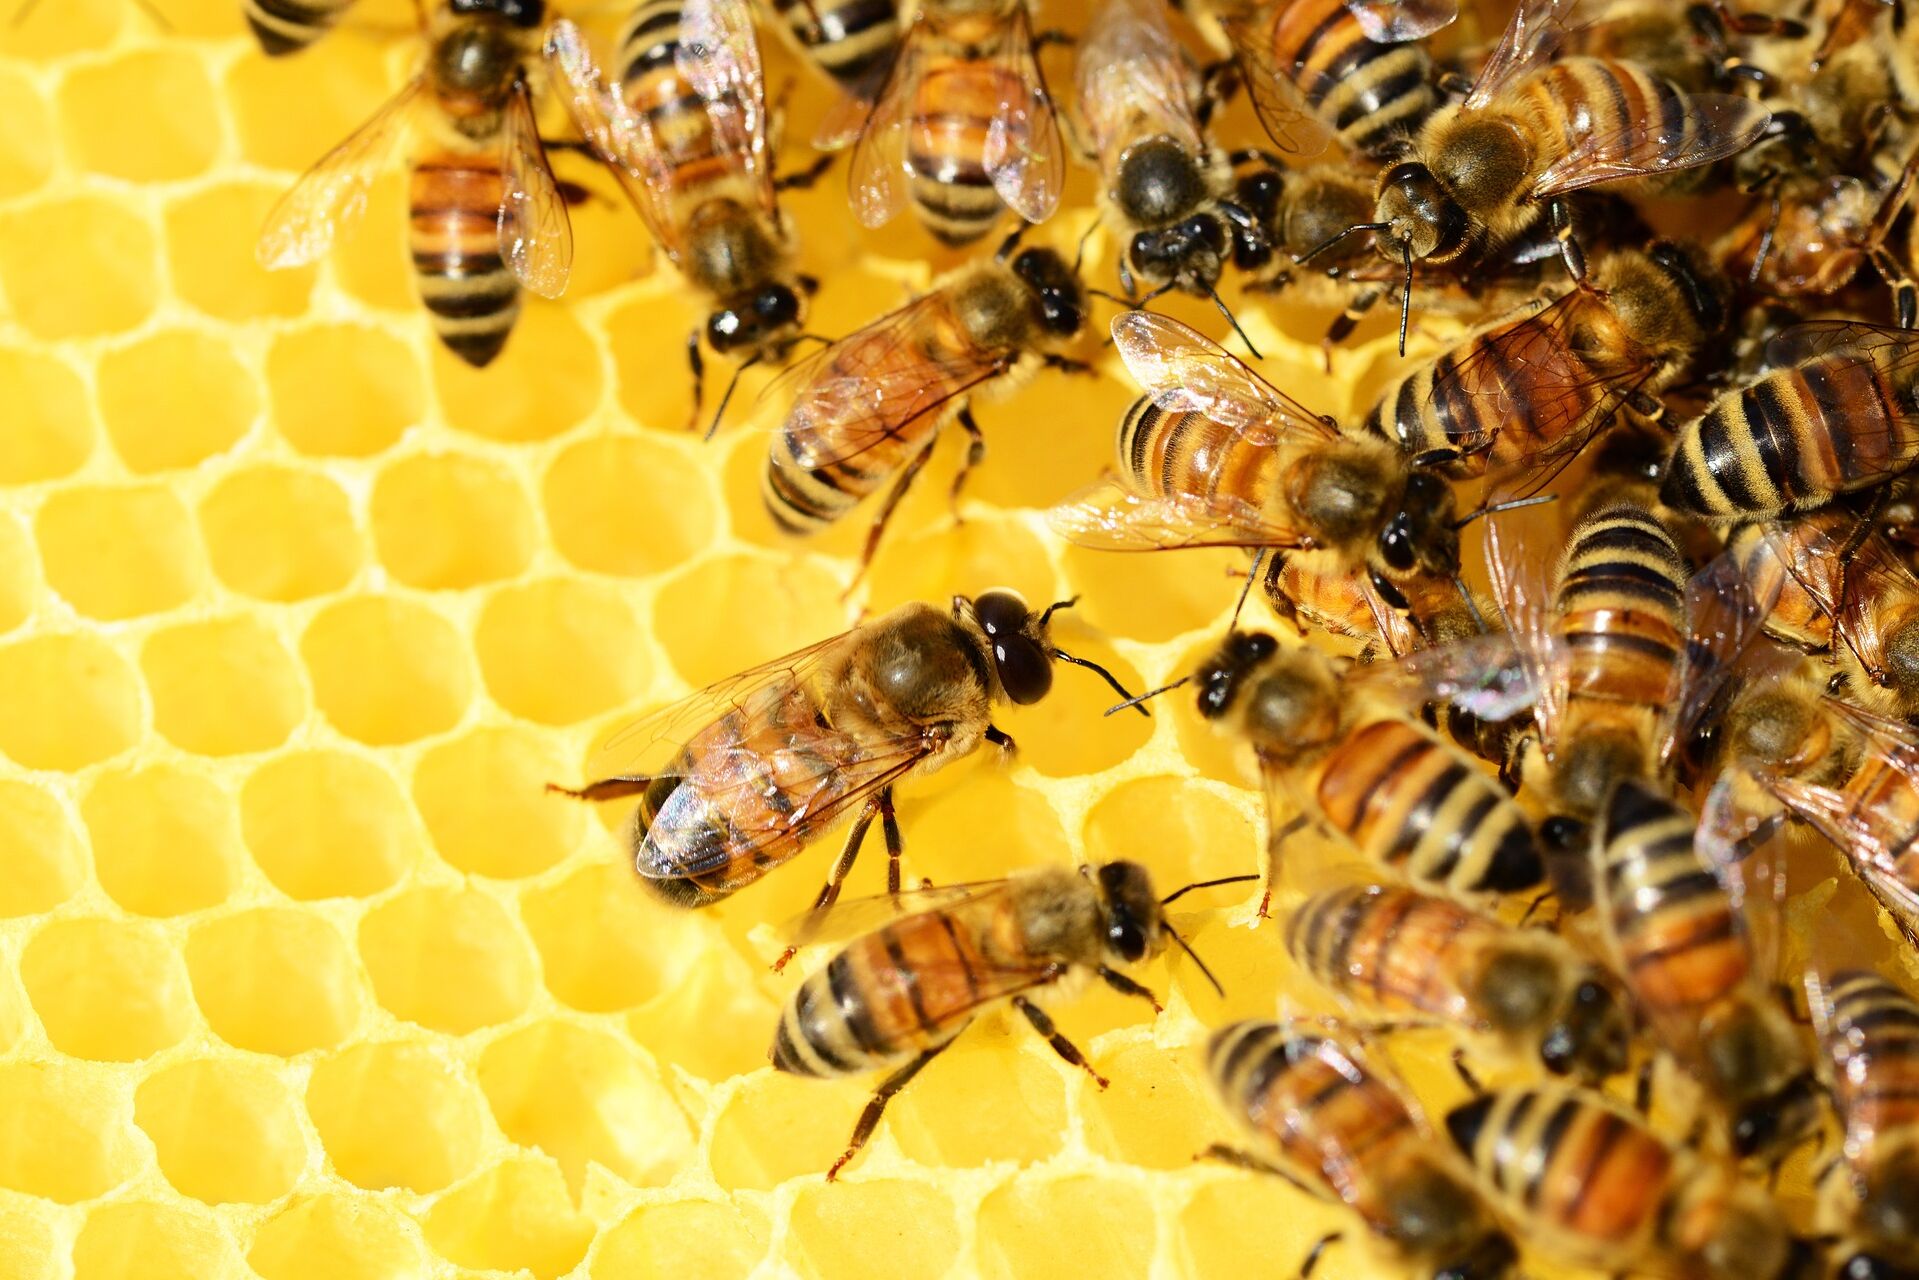 Bienenschwarm in Honigwabe